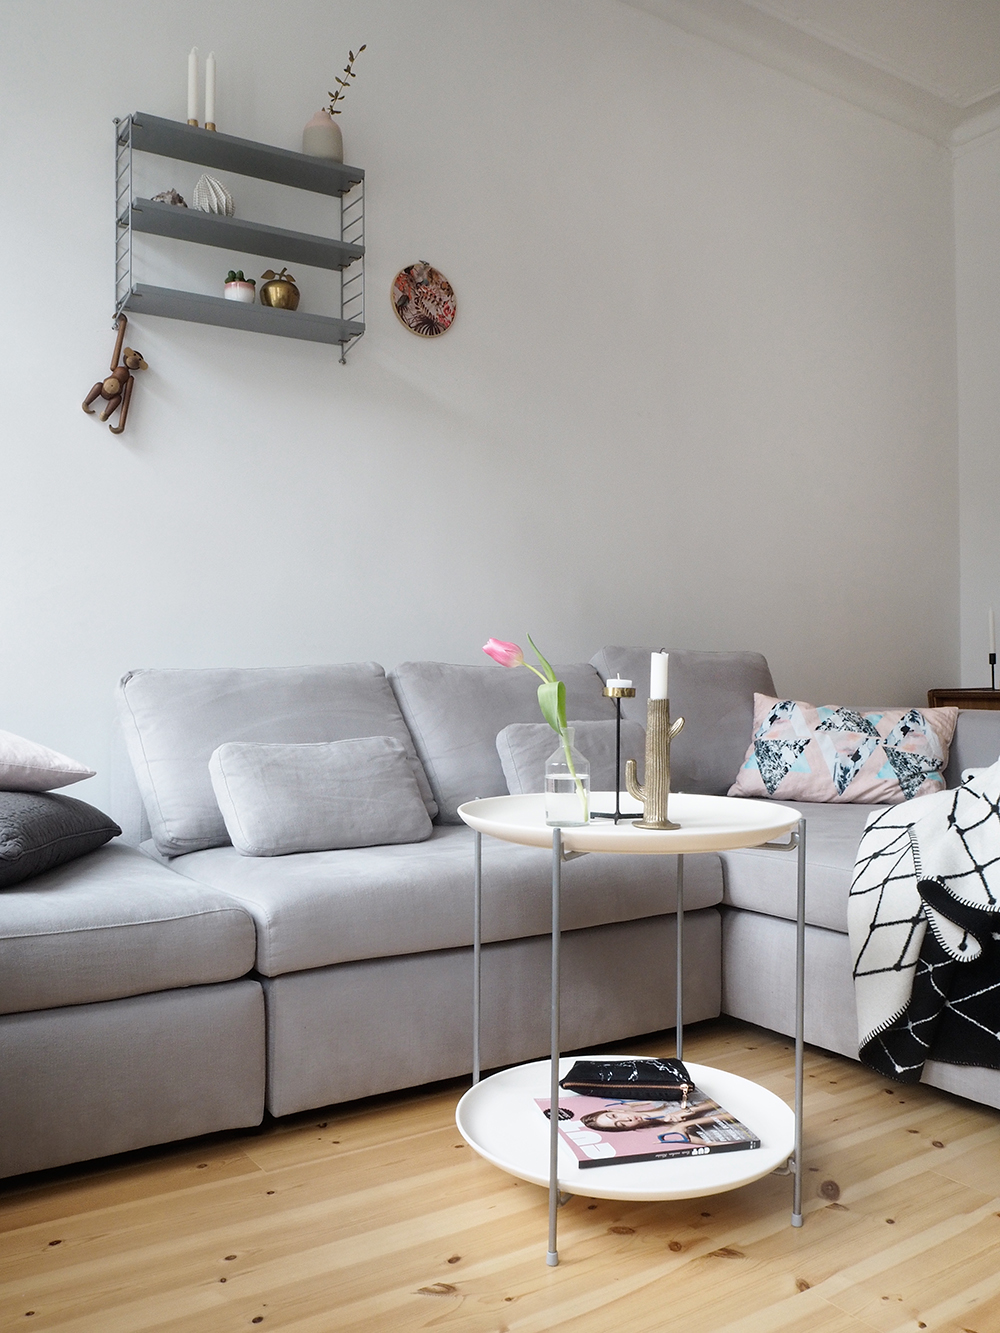 Neues Wohnzimmer + neues Sofa von Sitzfeldt.